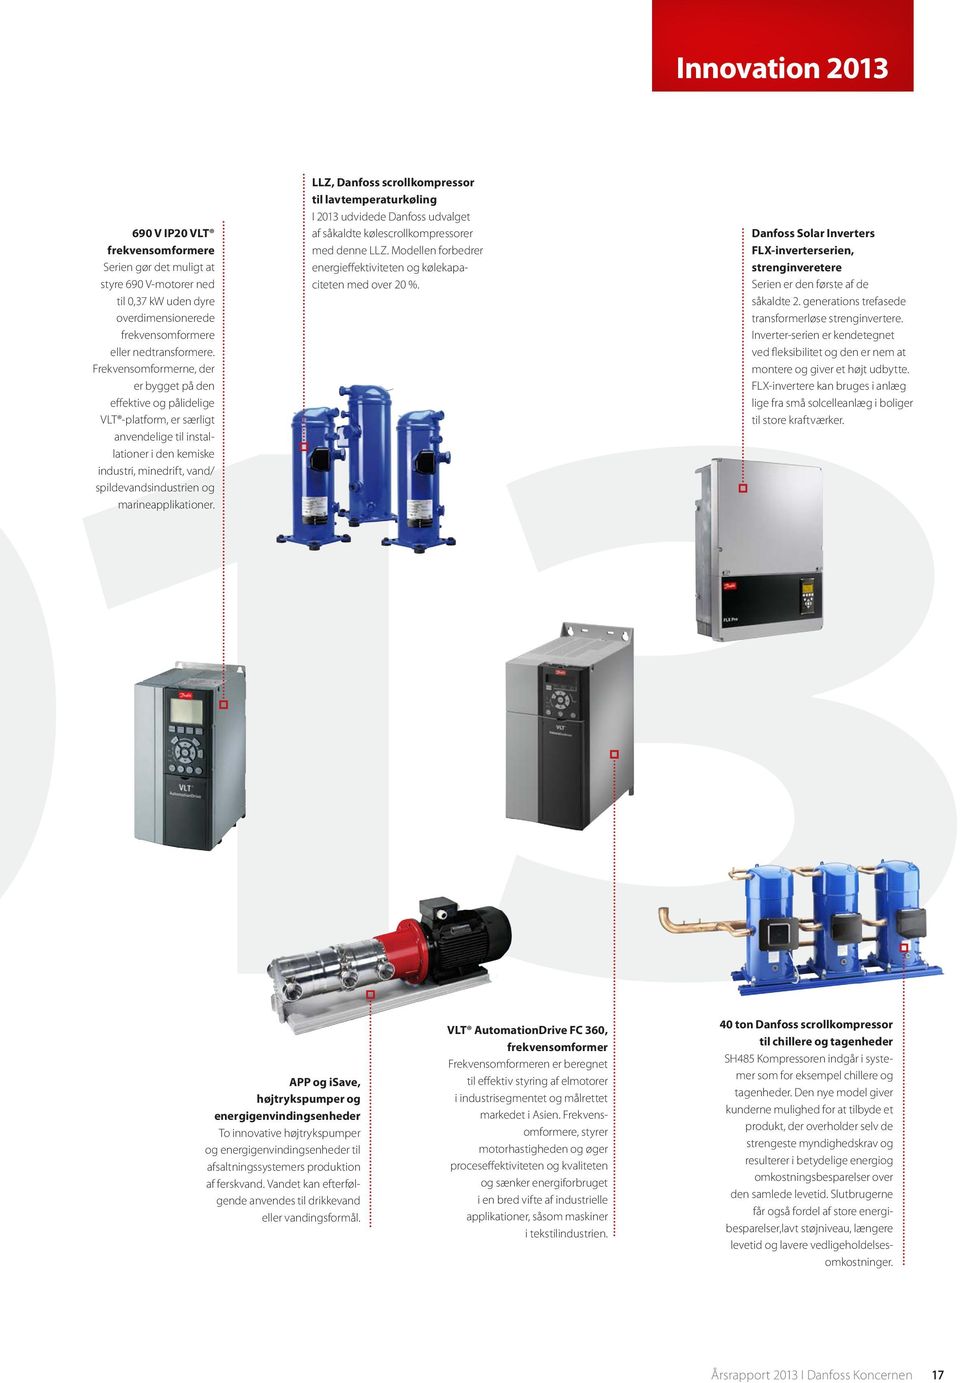 marineapplikationer. LLZ, Danfoss scrollkompressor til lavtemperaturkøling I 2013 udvidede Danfoss udvalget af såkaldte kølescrollkompressorer med denne LLZ.